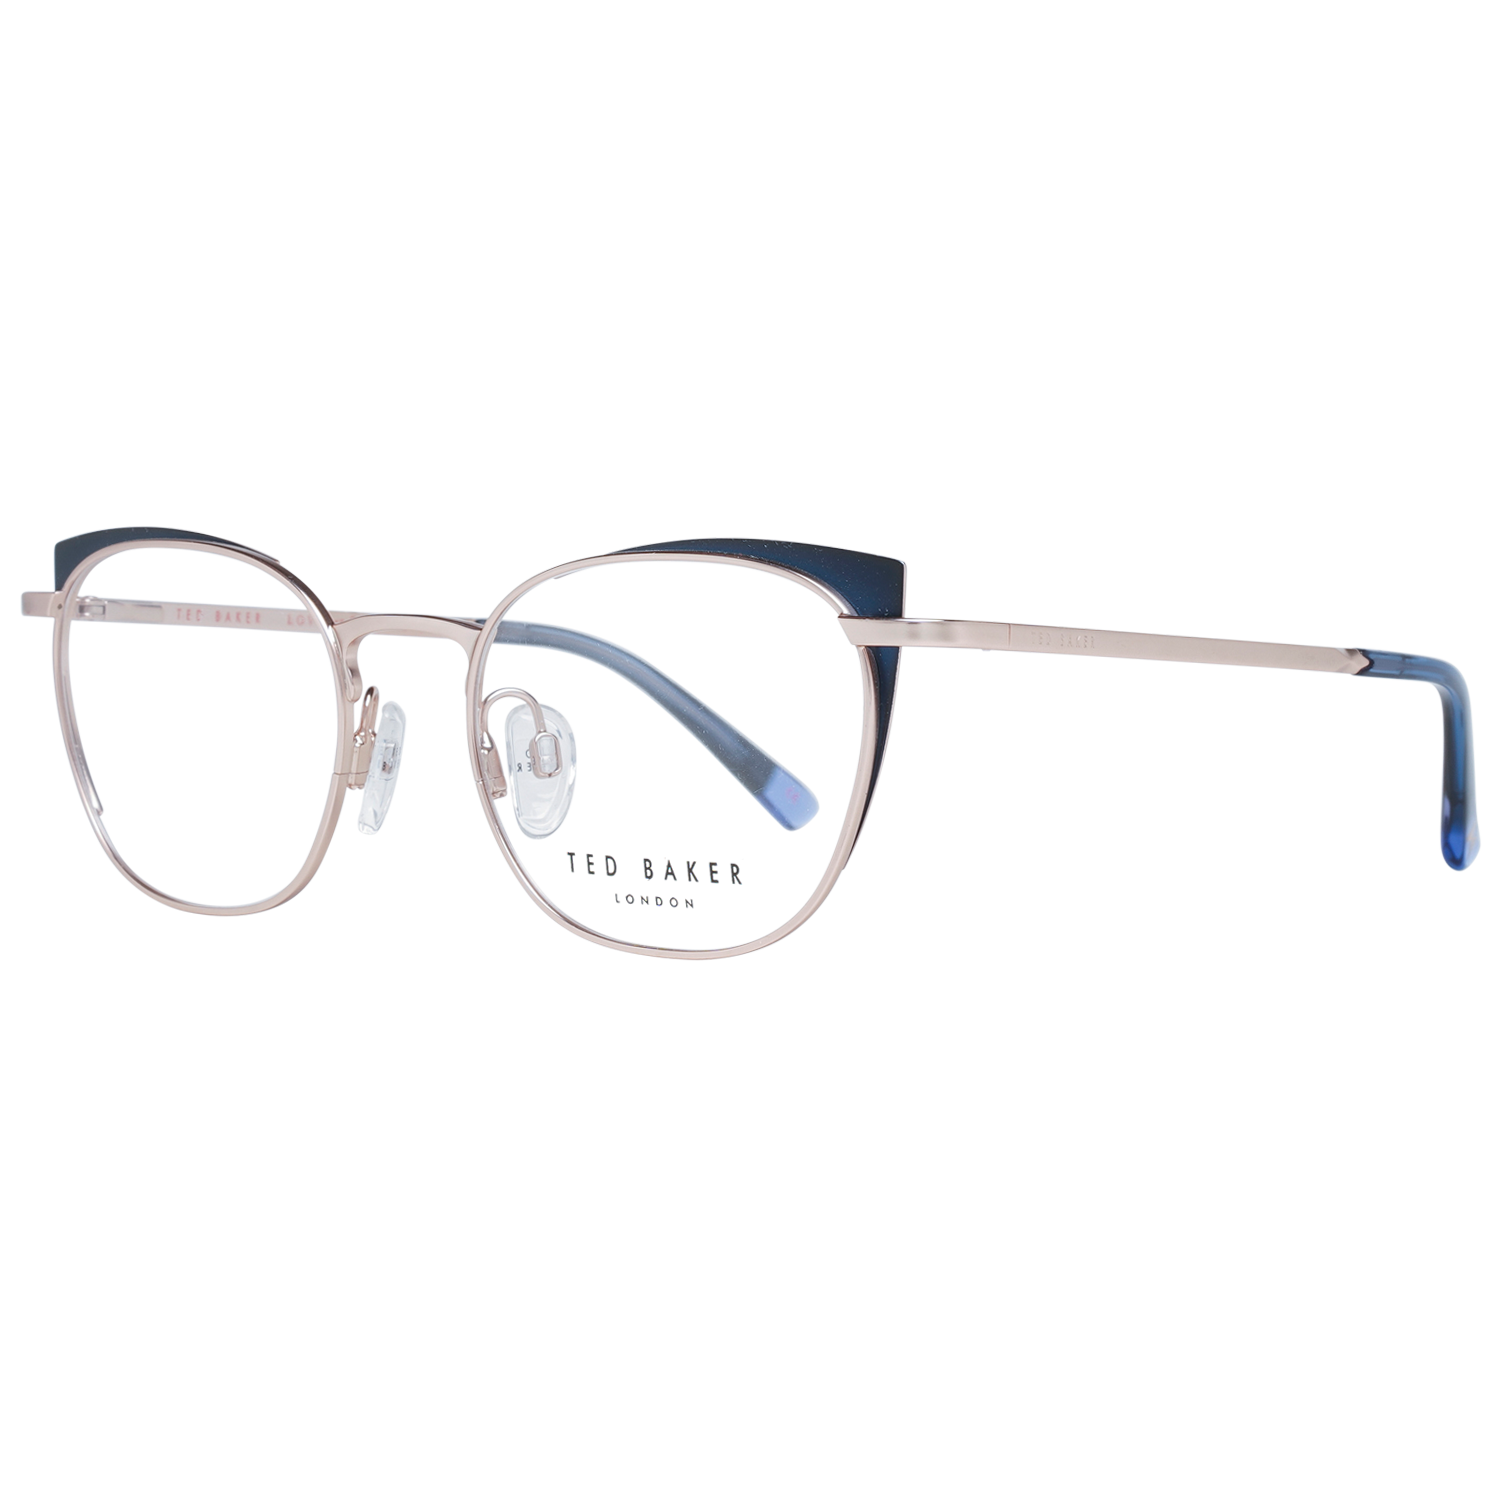 Ted Baker Prescription Glasses | lupon.gov.ph